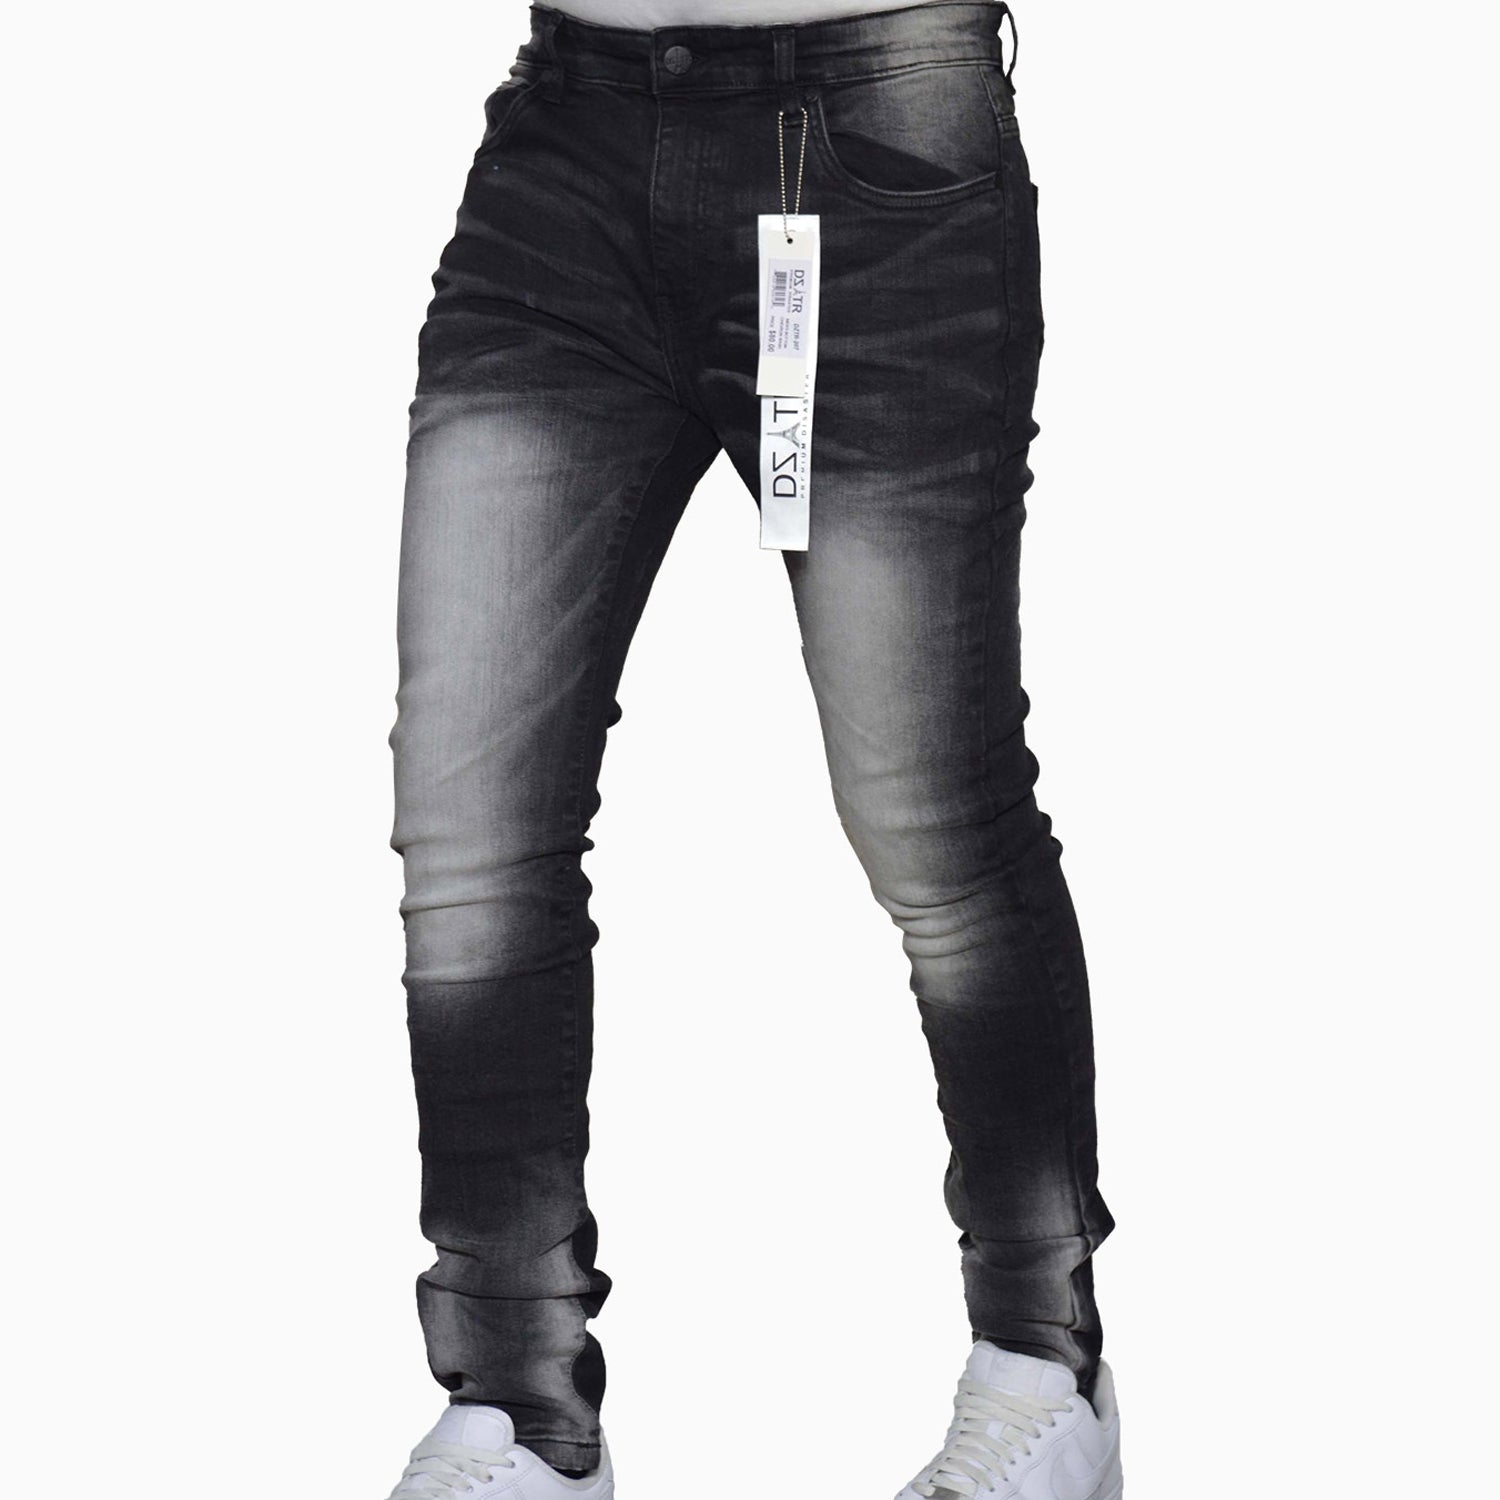 premium-disaster-mens-chevron-jeans-denim-skinny-pant-dztr-207